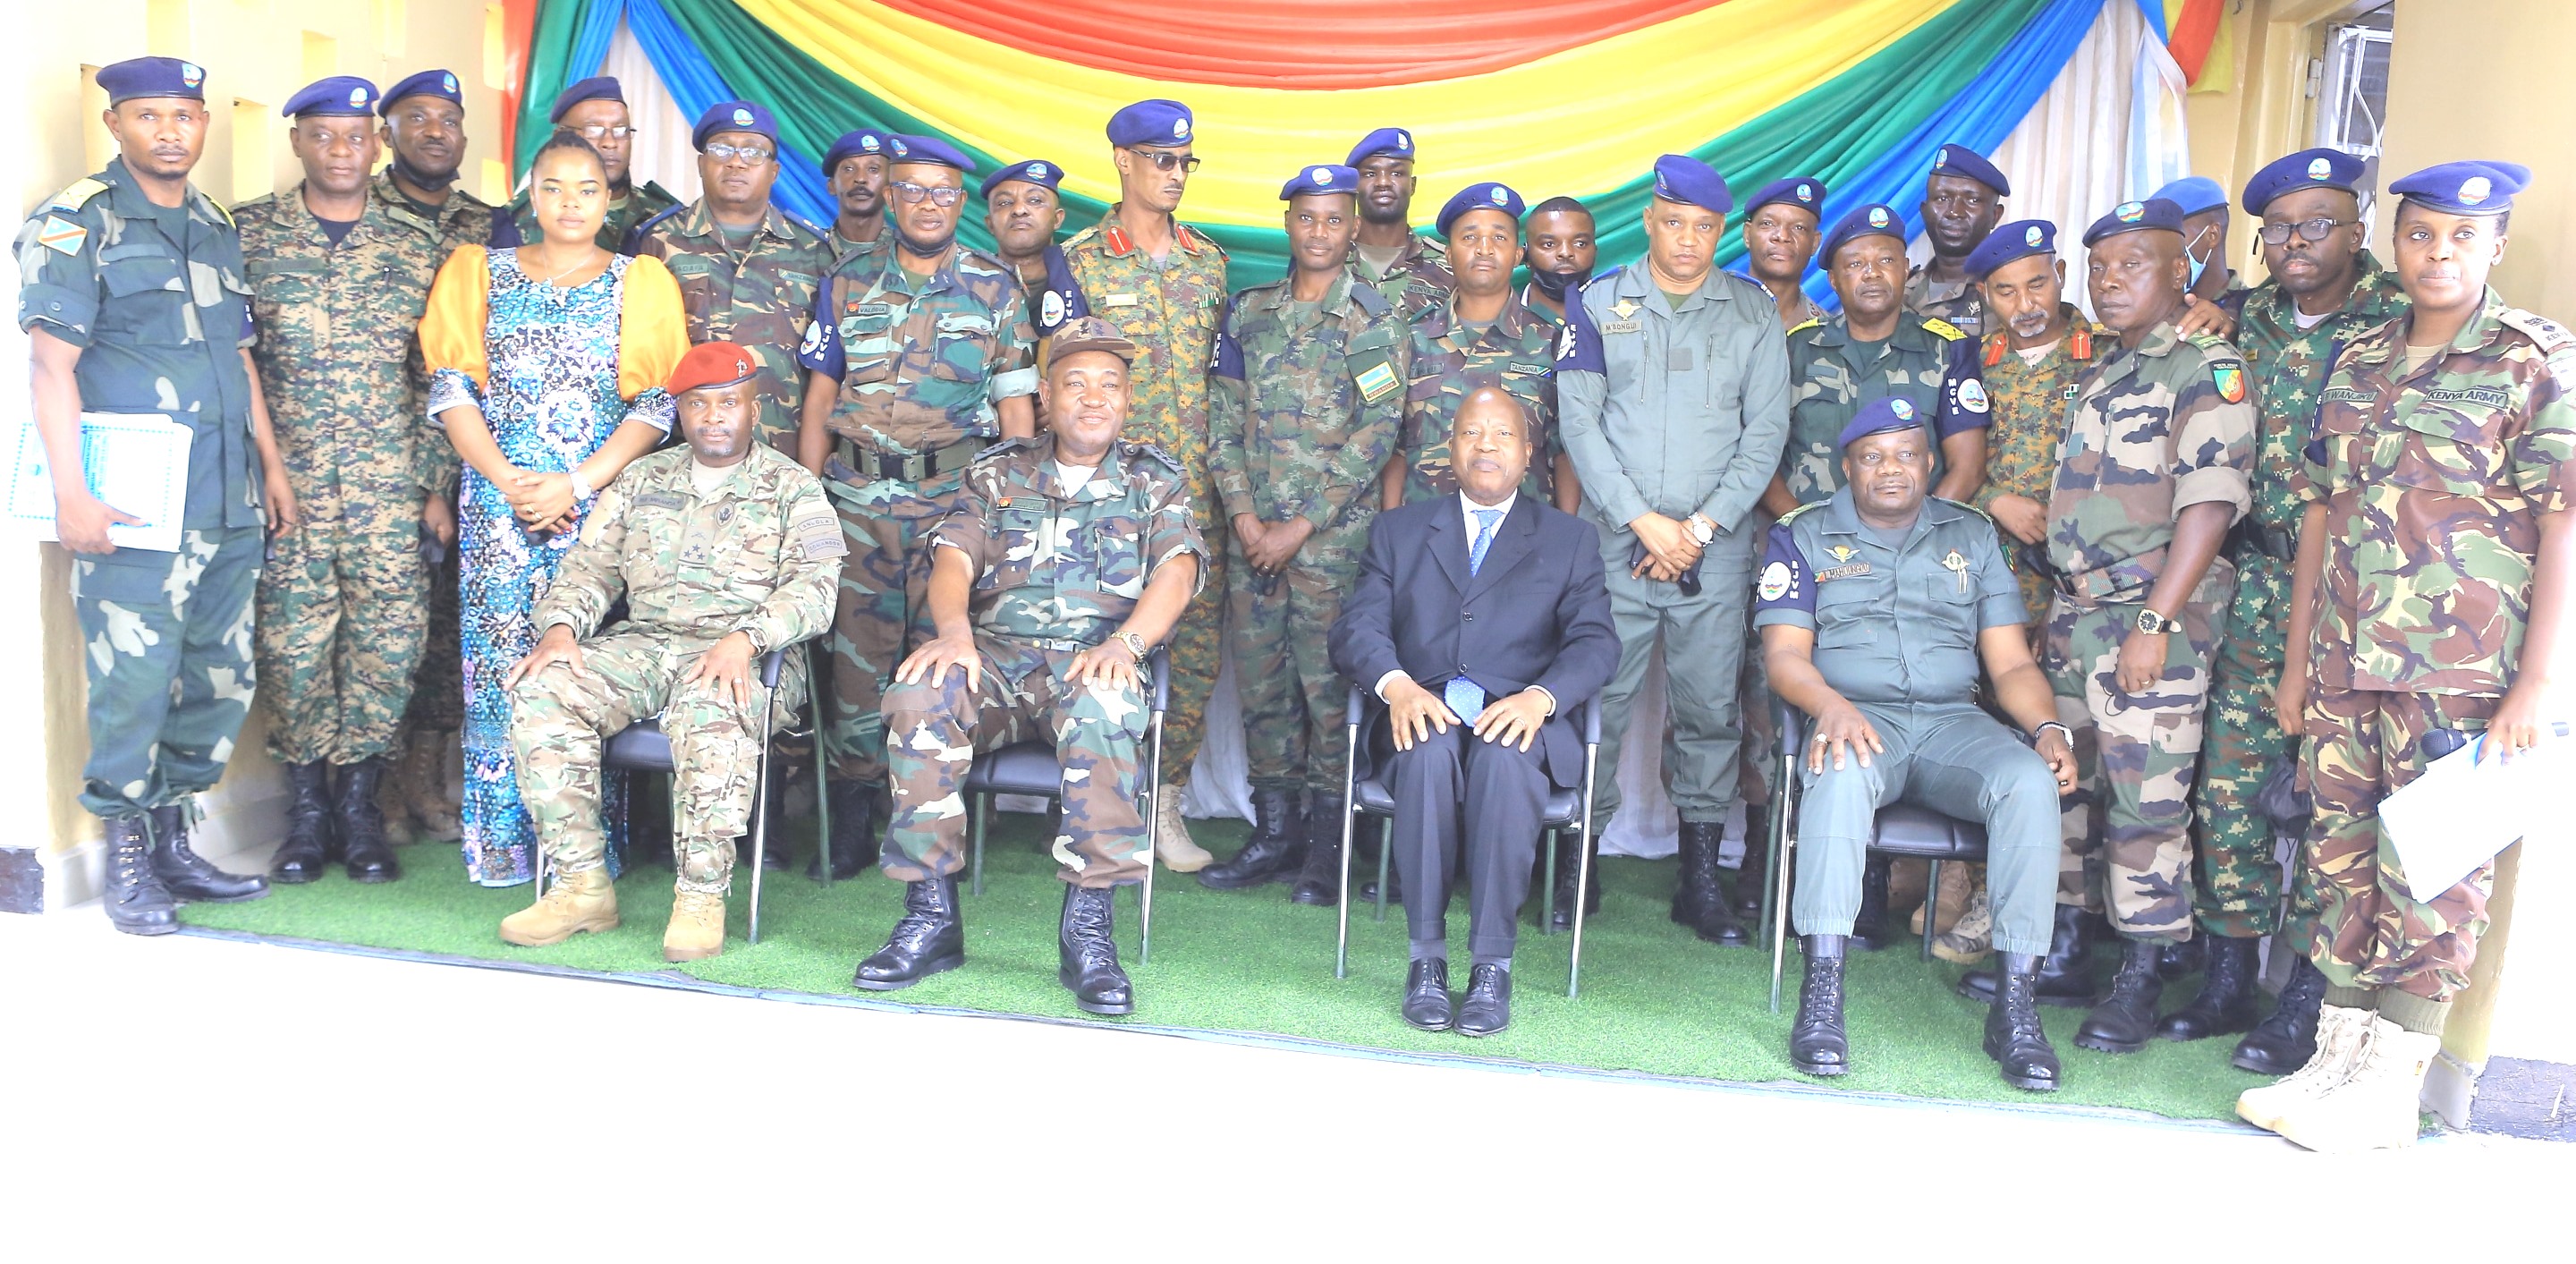 Le Secrétaire Exécutif, Amb. João Samuel Caholo avec des officiers du Mécanisme Conjoint de Vérification élargi lors de la cérémonie de remise entre le commandant sortant et entrant, janvier 2021 Goma-RDC.